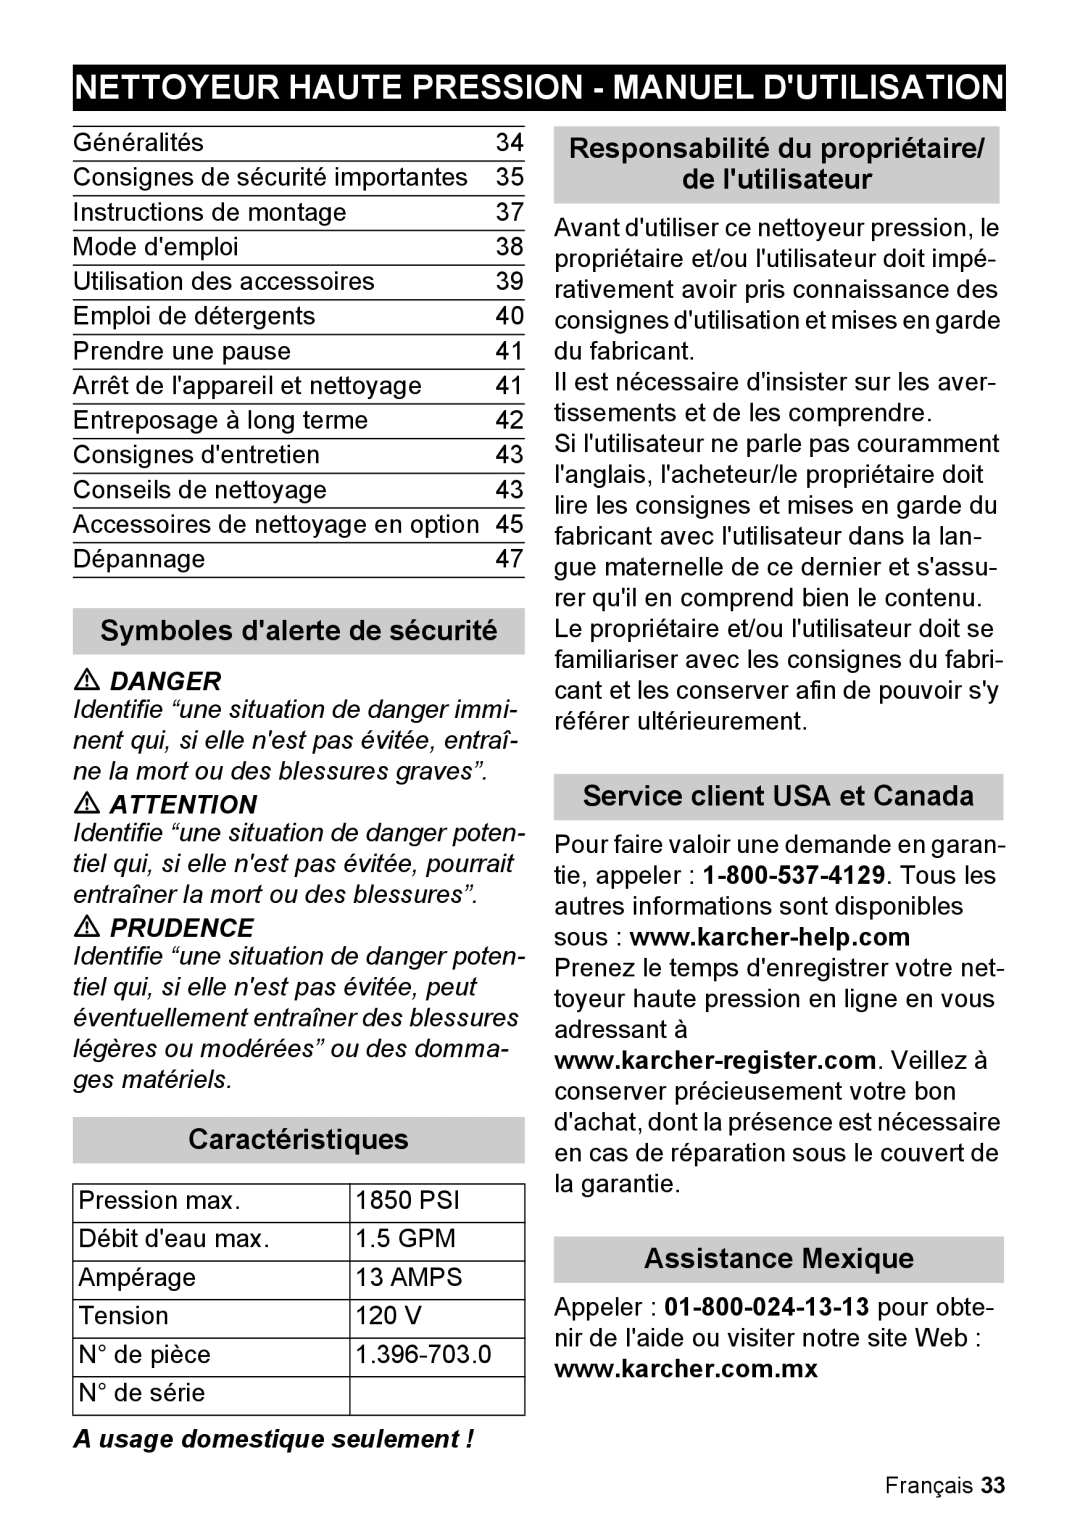 Karcher K 5.85 M Nettoyeur Haute Pression - Manuel Dutilisation, Responsabilité du propriétaire, de lutilisateur, Prudence 